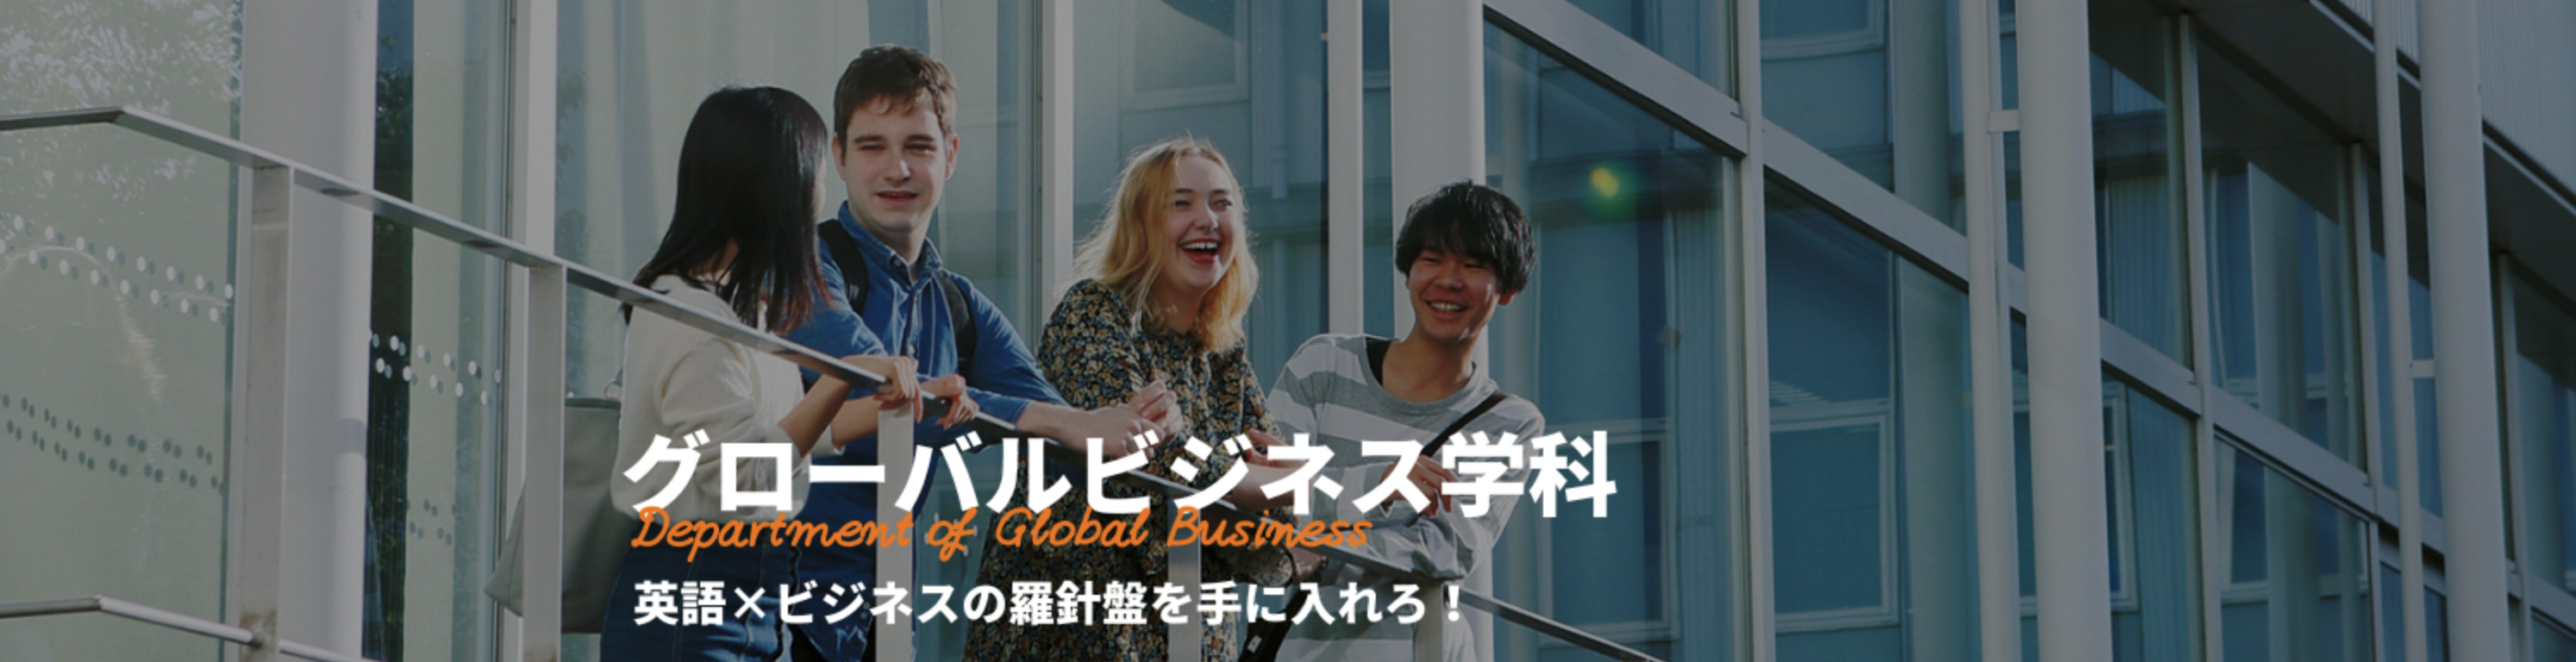 グローバルビジネス学科 | 名古屋外国語大学 現代国際学部グローバルビジネス学科|グローバル共生の世界へ